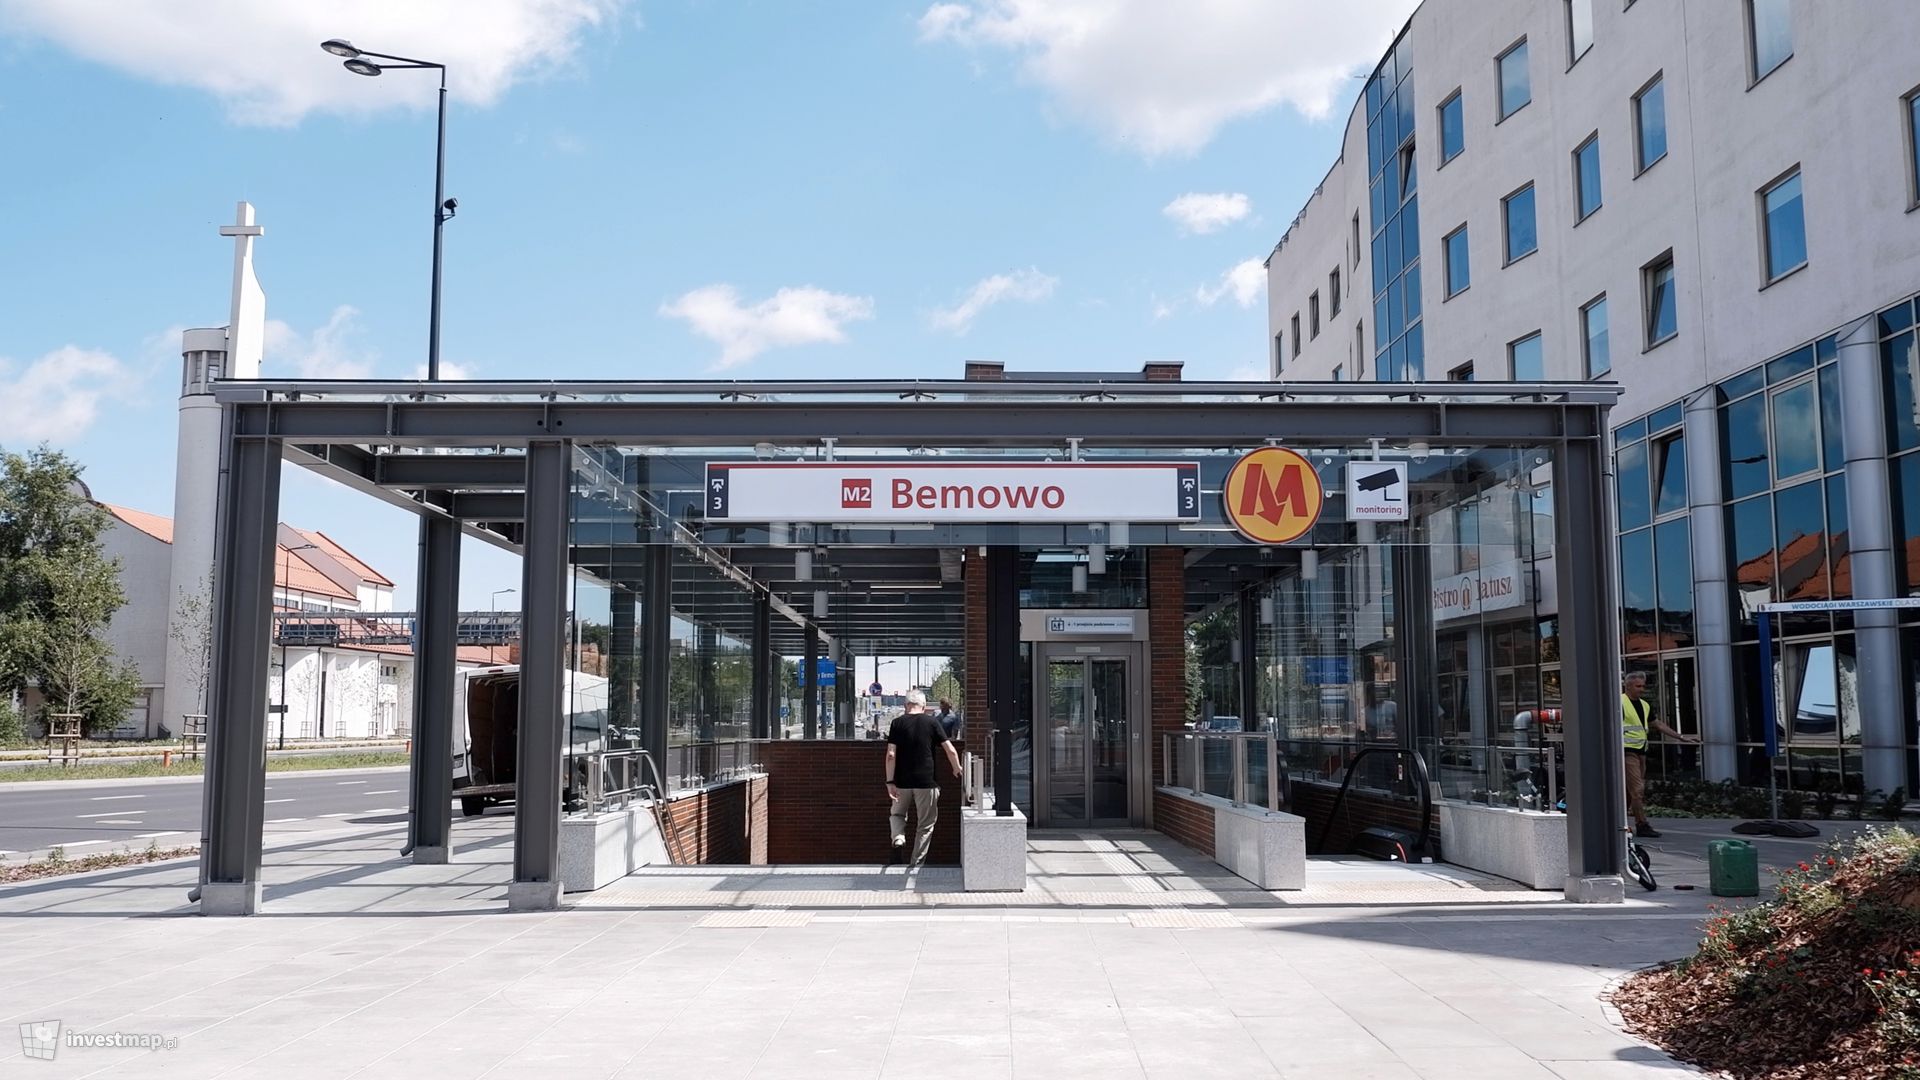 Nowa stacja metra w Warszawie M2 Bemowo funkcjonuje od ponad miesiąca 